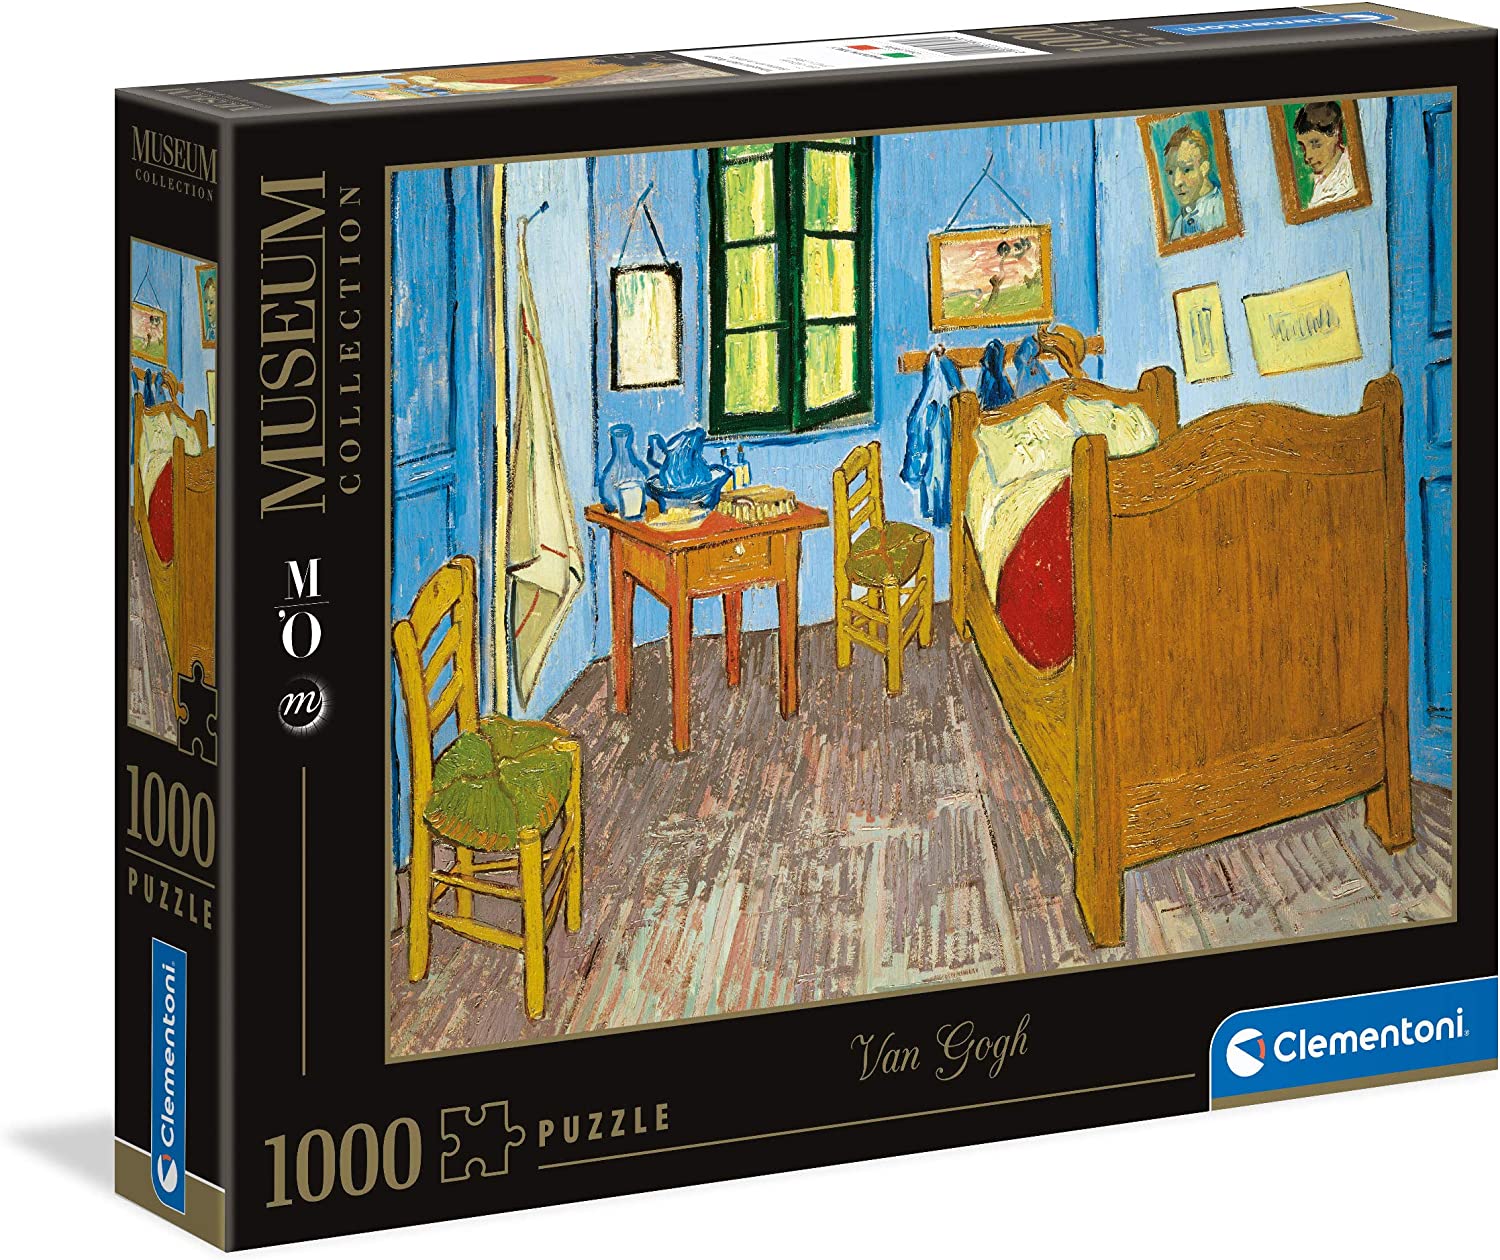 Clementoni - Puzzle Museum Collection, Chambre Arles, Van Gogh, 1000 Pezzi,  Arte, Puzzle Quadri - CL39616